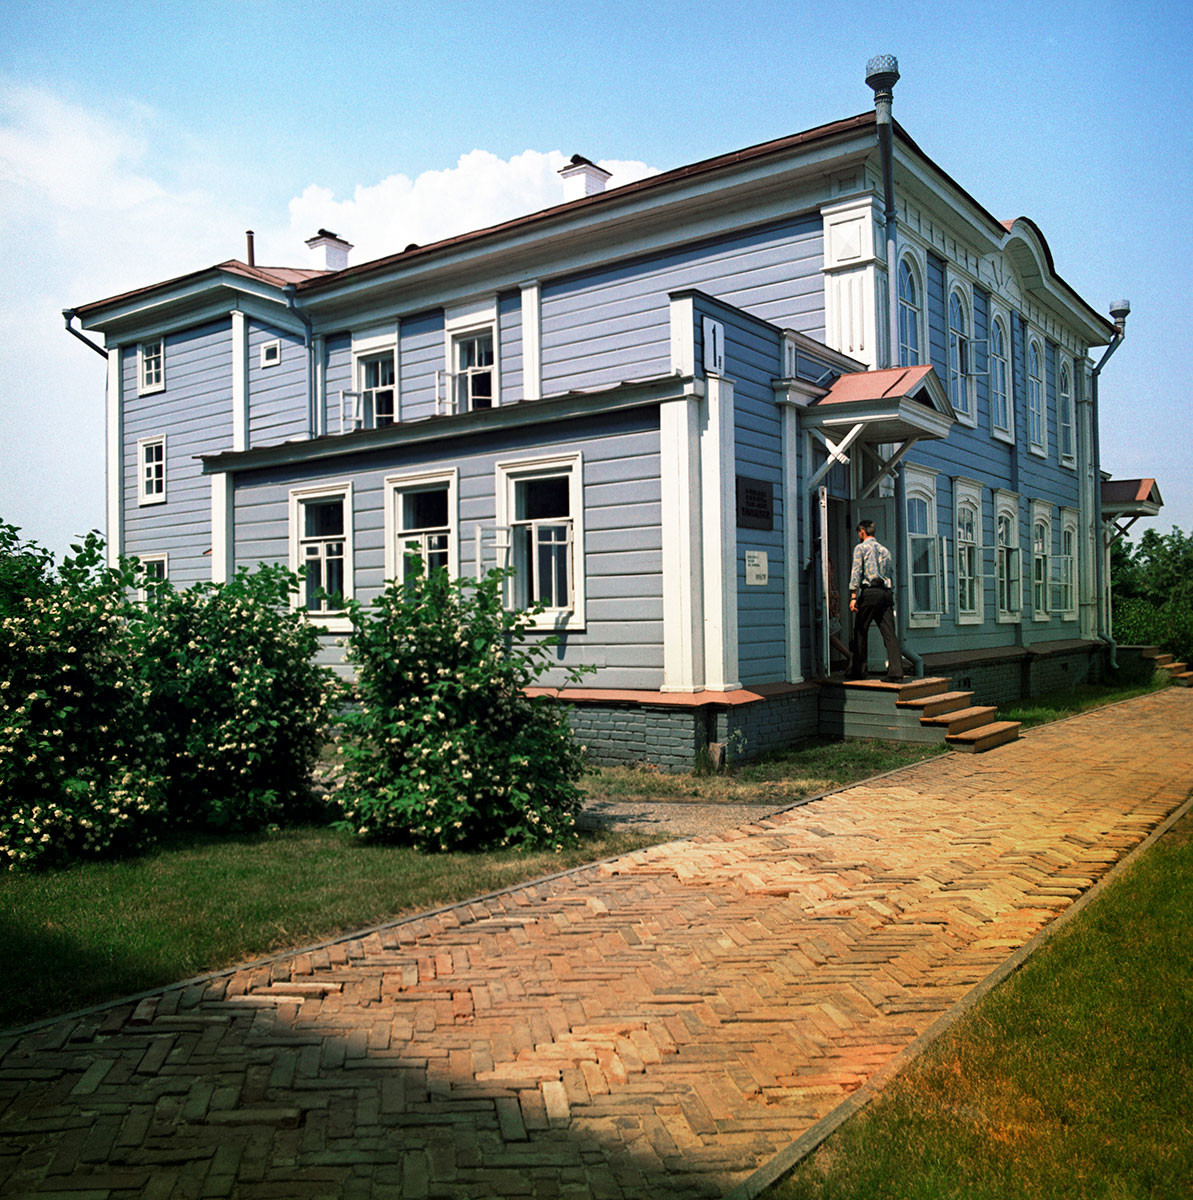 The Ulyanov family house in Simbirsk (Ulyanovsk).